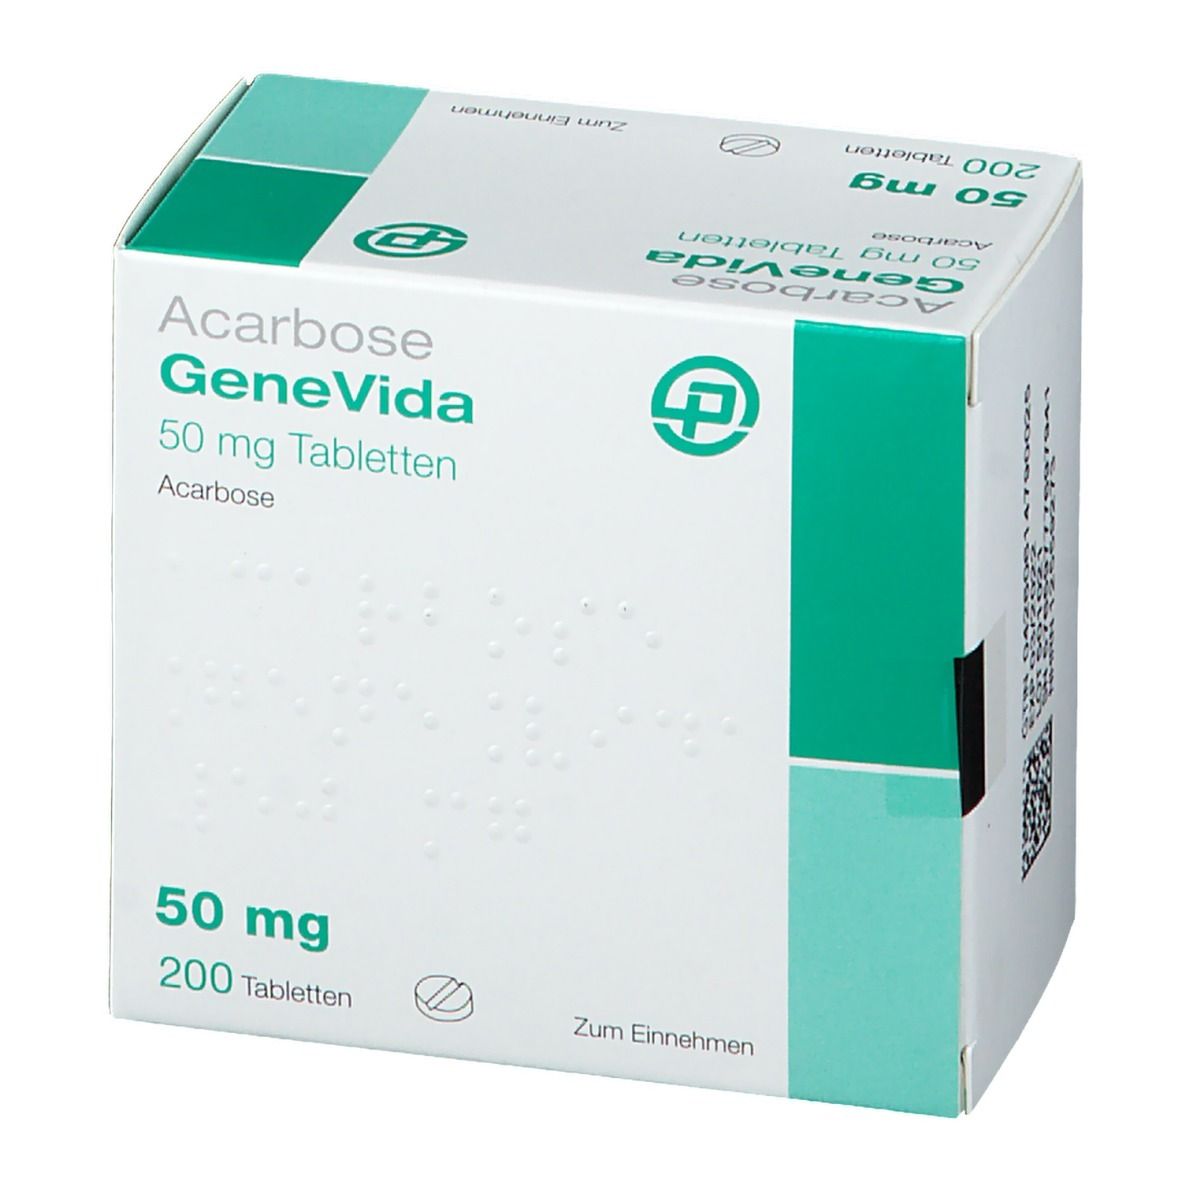 Acarbose GeneVida 50 mg